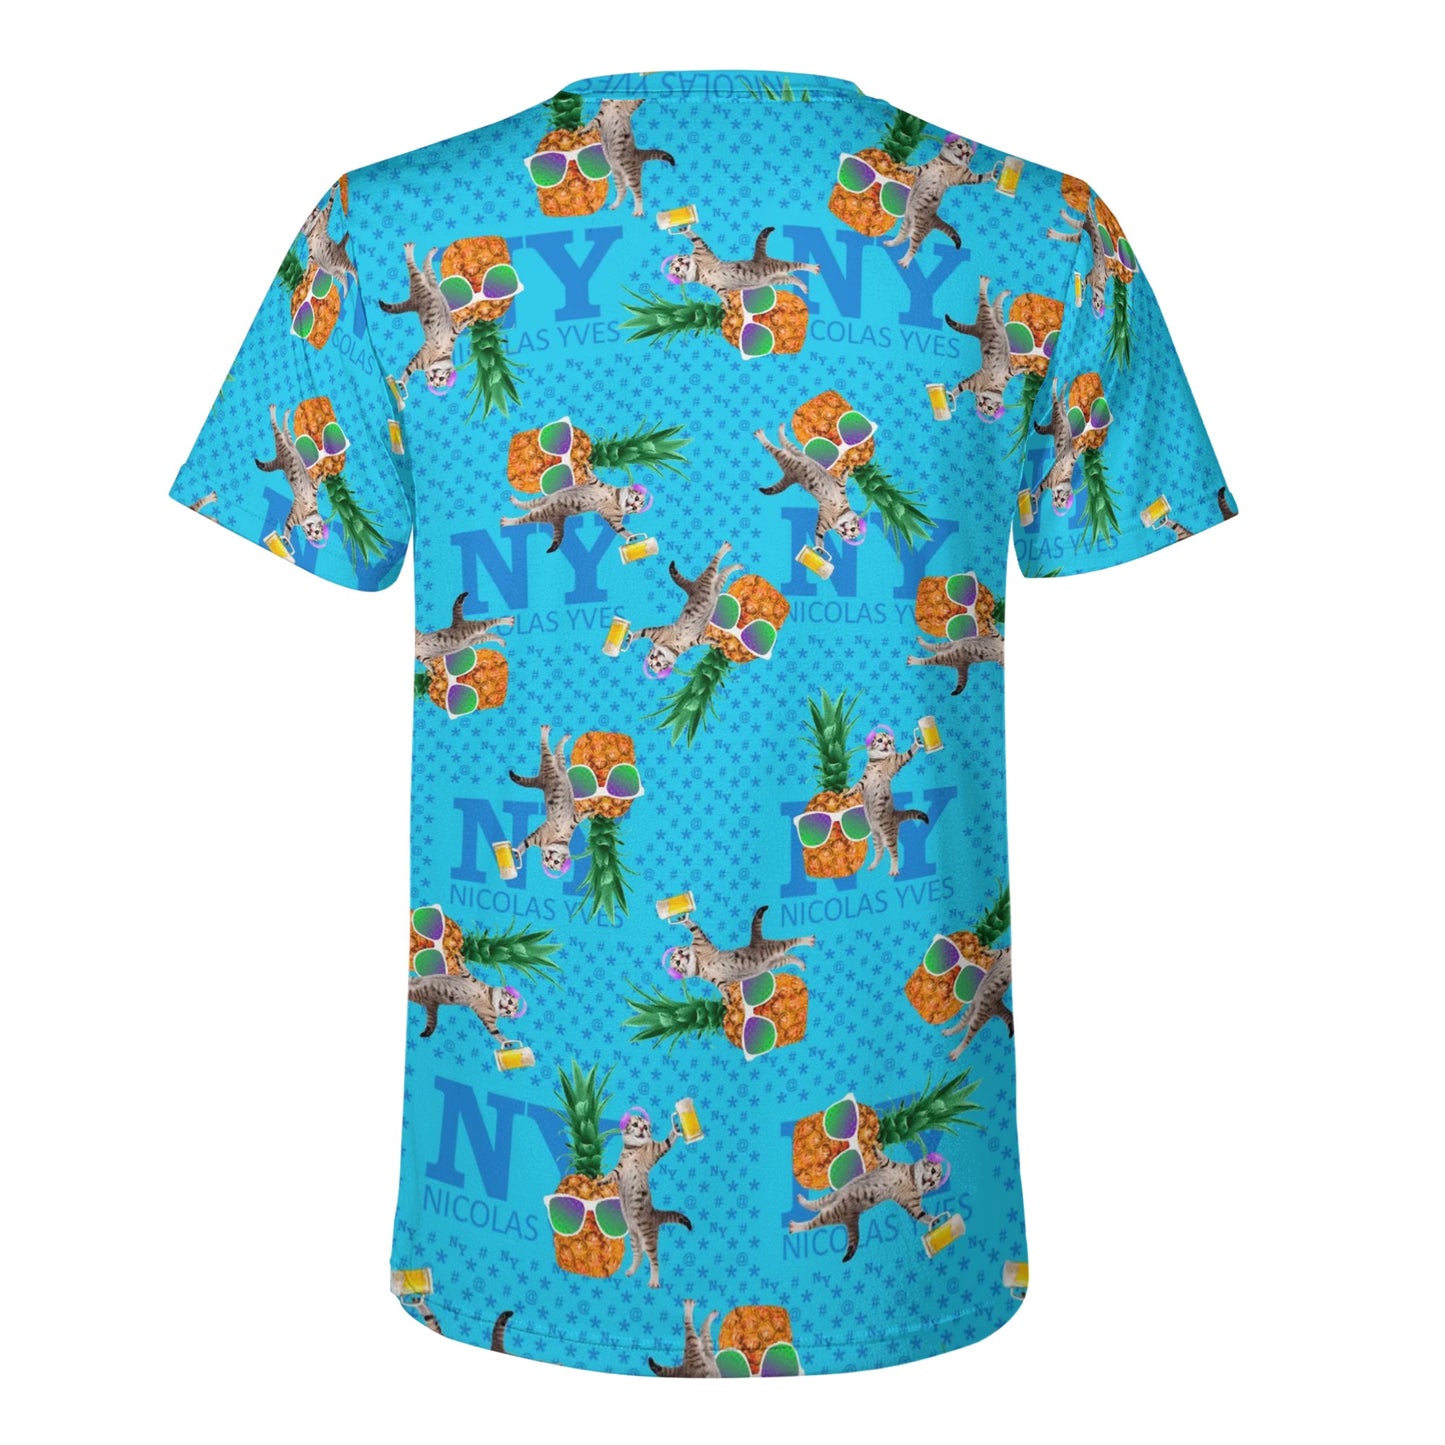 Un Tee-shirt, des Chats, des Ananas et de la Bière ! Le T-shirt Bleu Kitsch Chananas de Nicolas Yves. Lunettes reflet violet vert 05